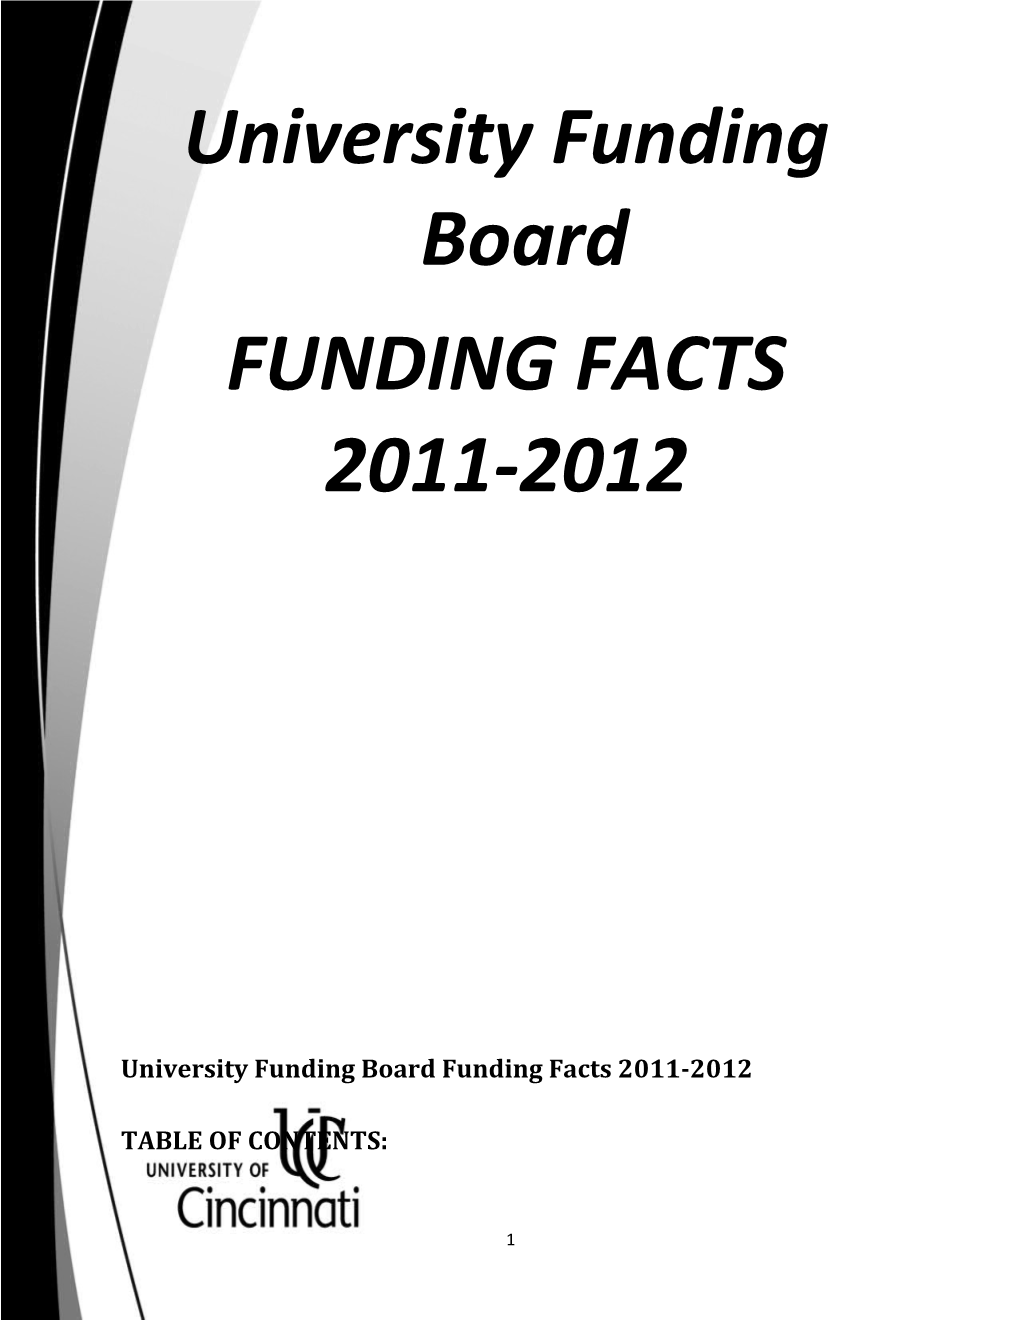 University Funding Board